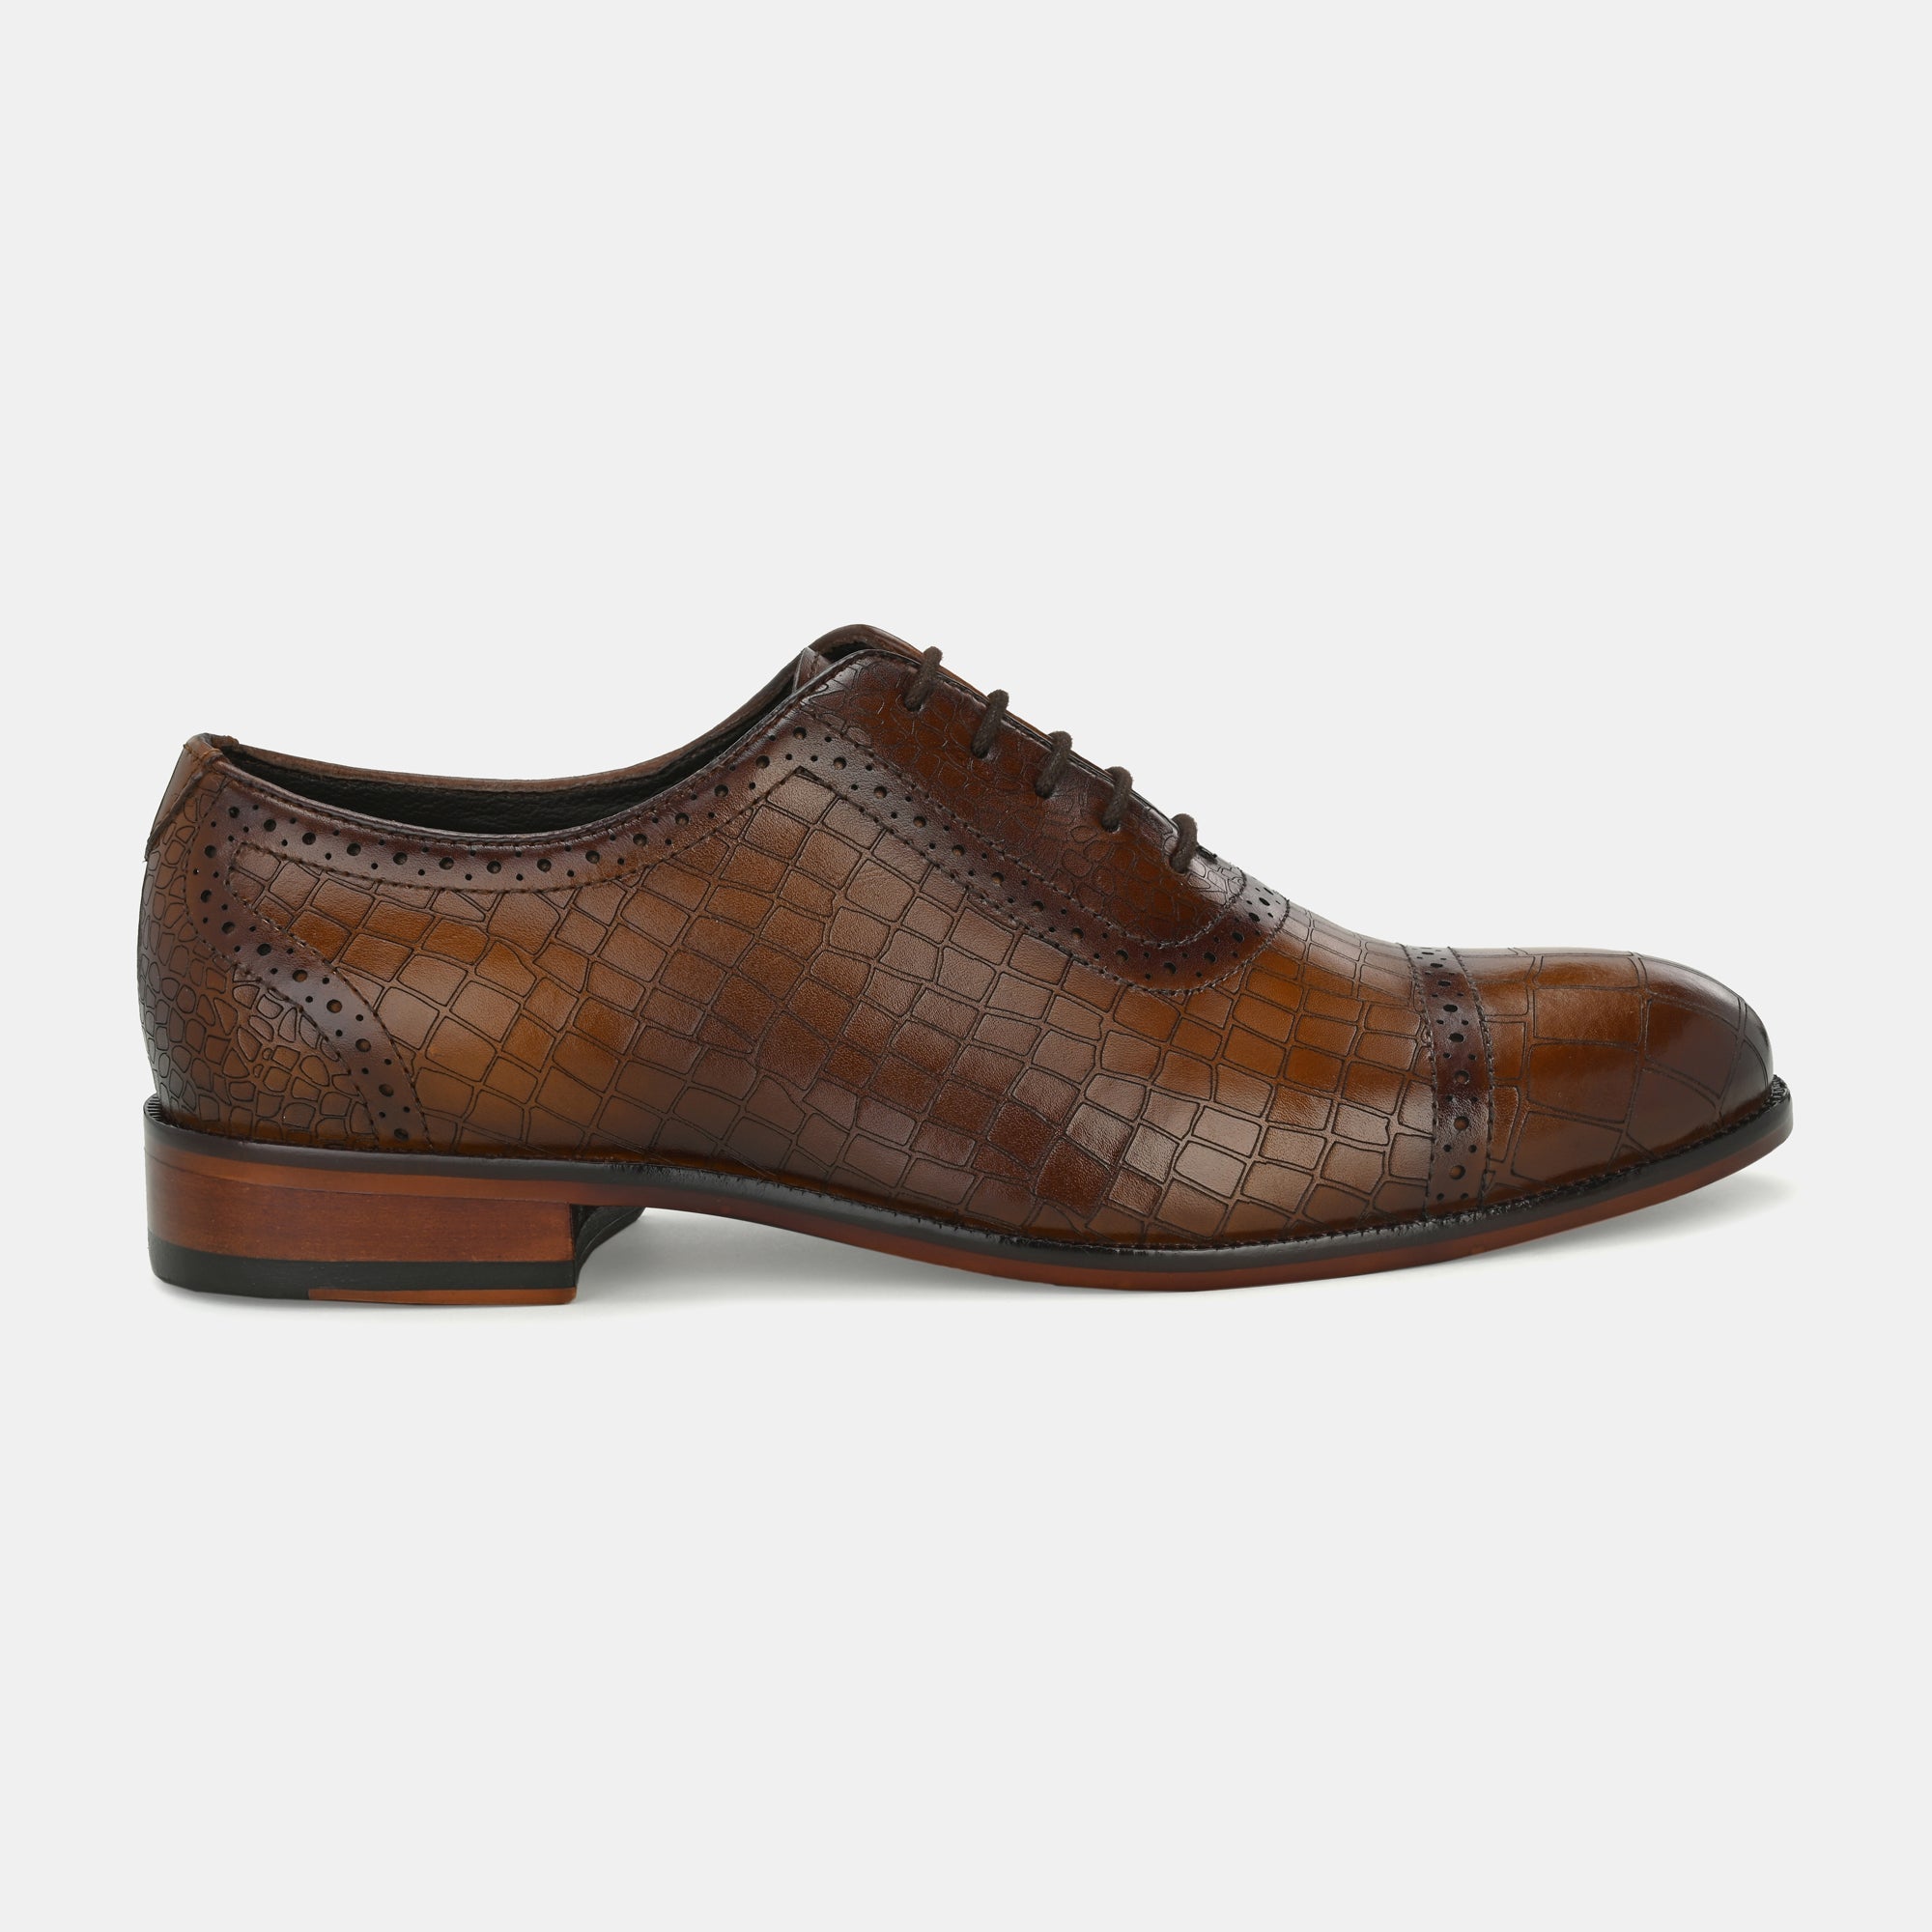 Egoss Leather Slip On Shoes For Men